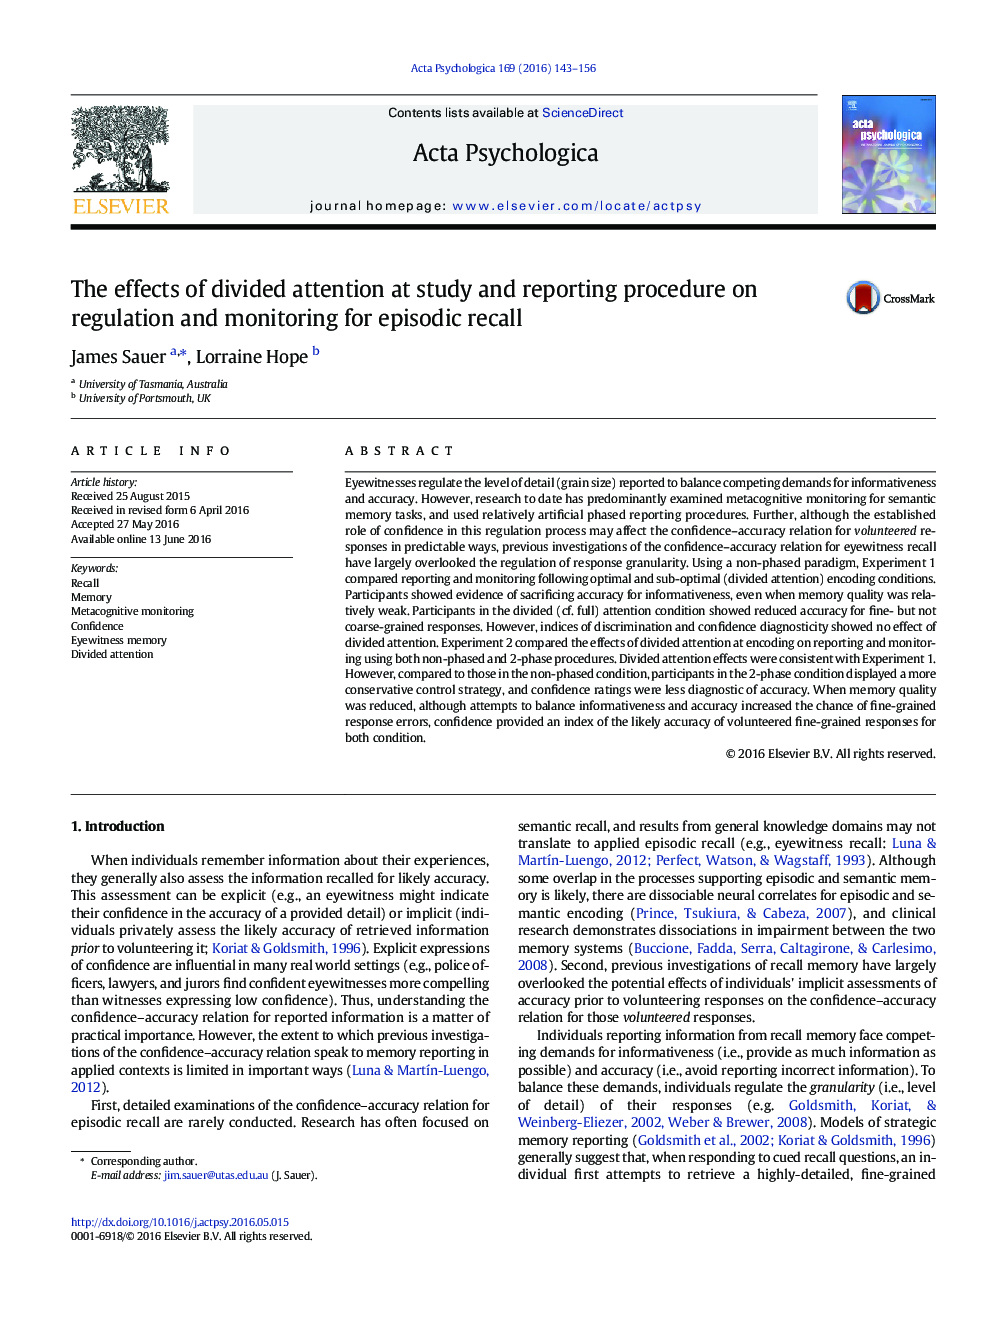 اثرات توجه تقسیم در روش مطالعه و ارائه گزارش در مورد مقررات و نظارت برای فراخوانی اپیزودیک